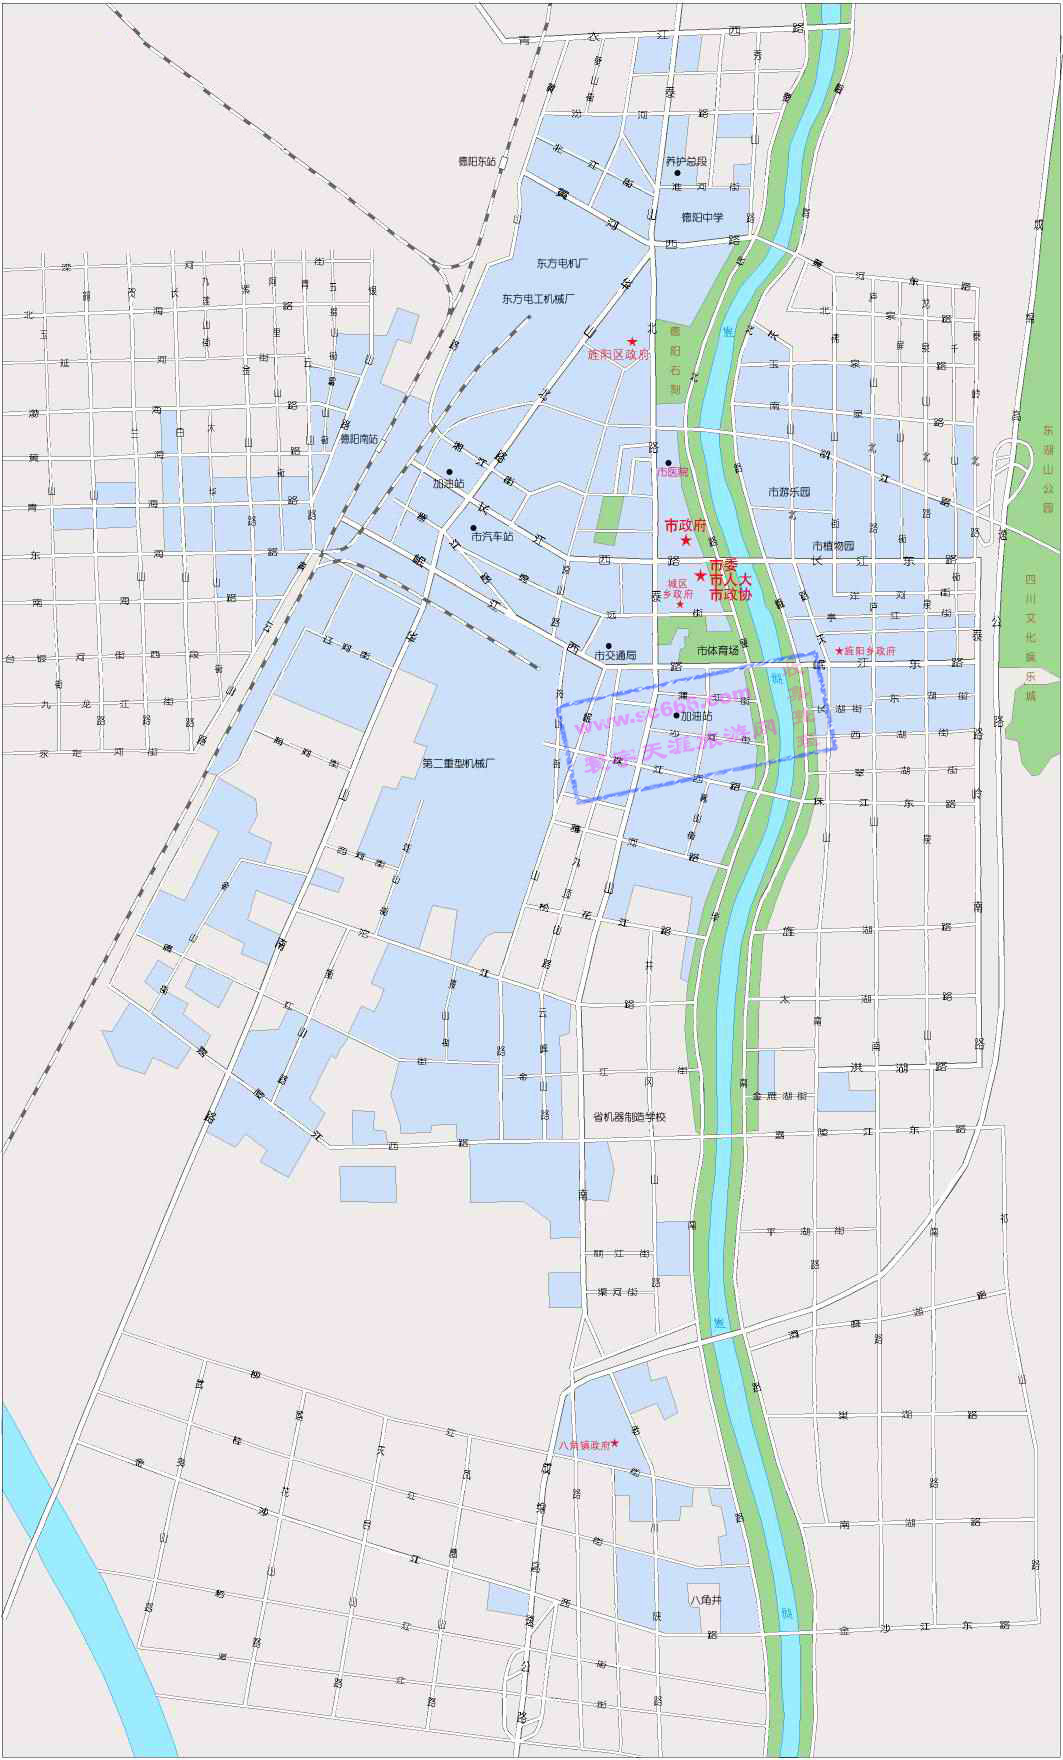 德阳市城区地图2